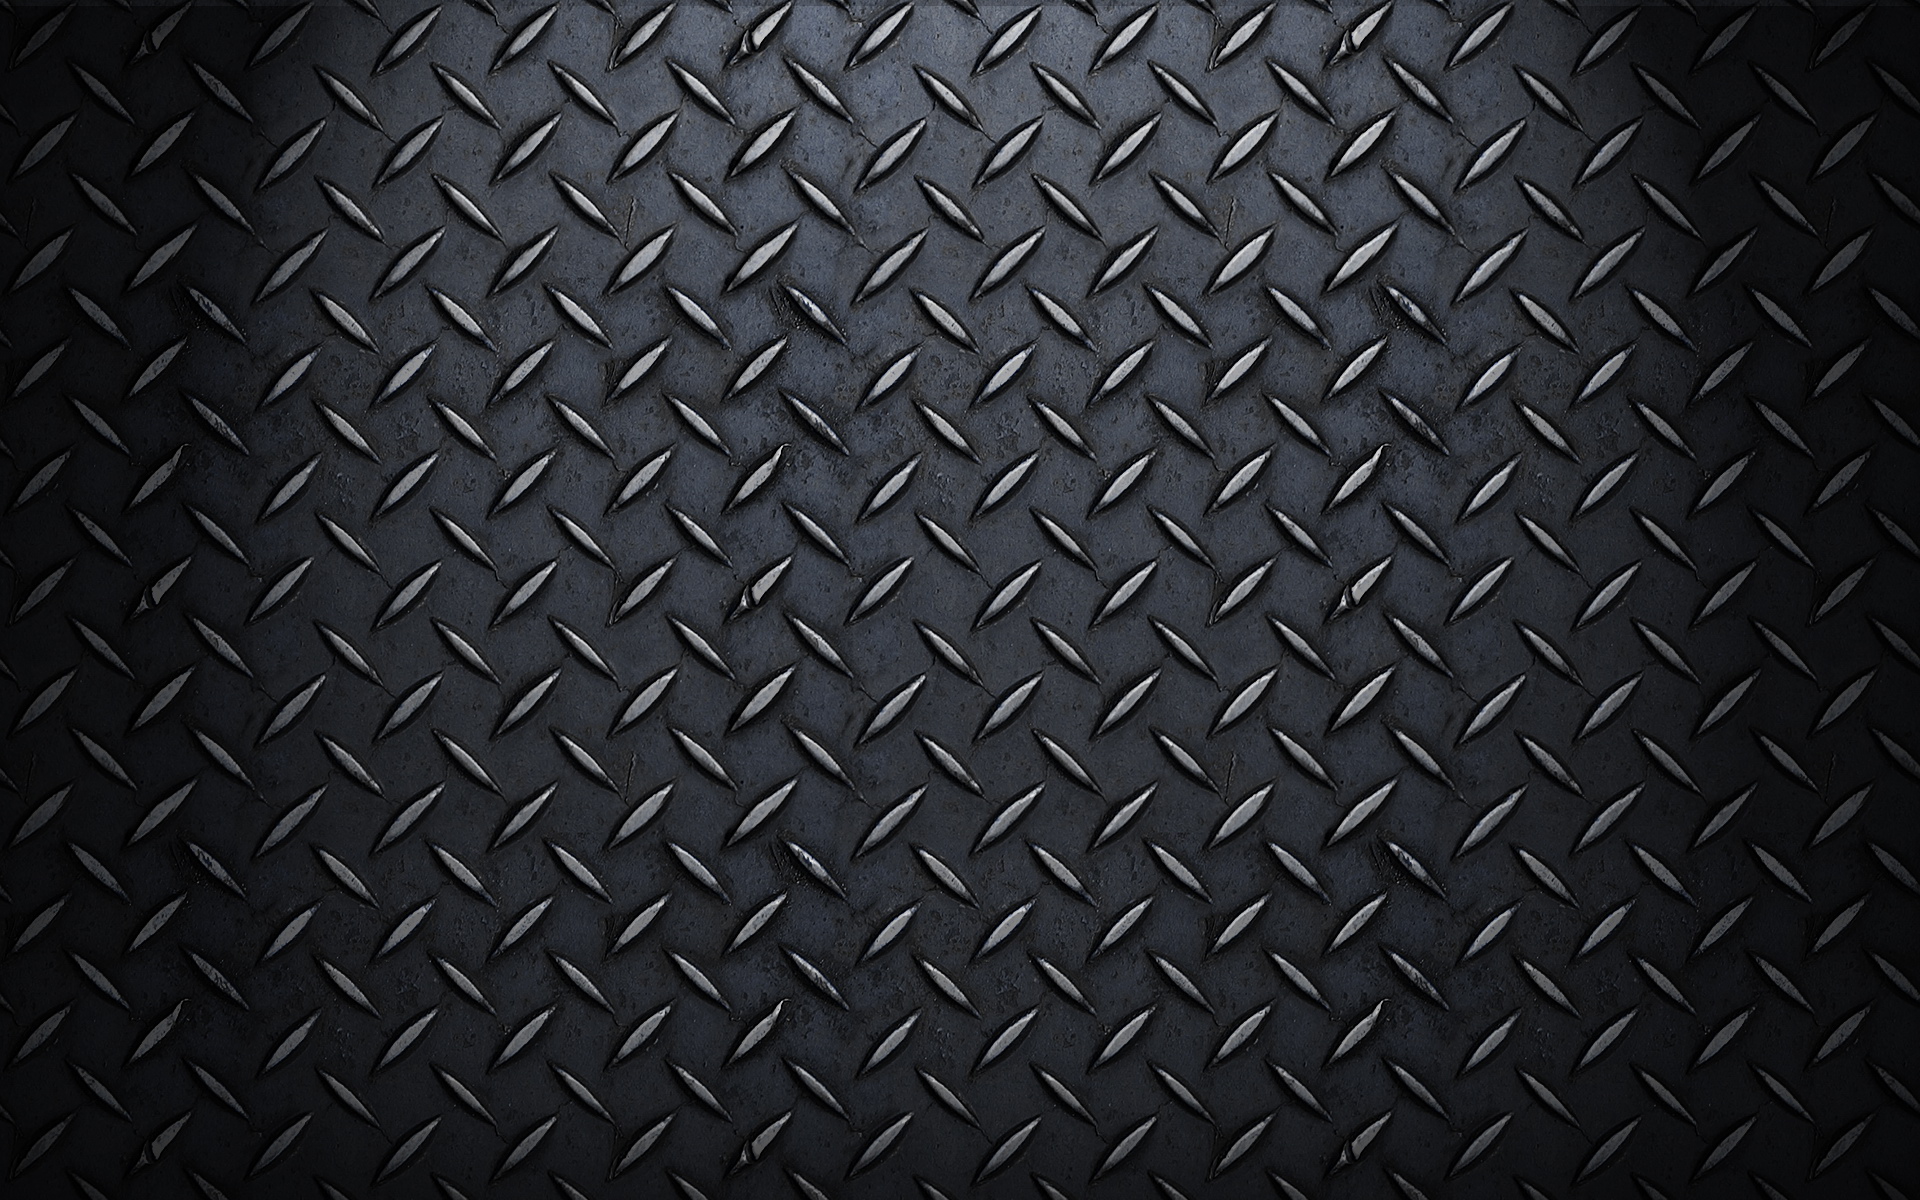 Hình nền thép đen: Hình nền thép đen không chỉ đem lại sự mạnh mẽ và nam tính, mà còn giúp cho không gian thêm phần cứng cáp và đầy sáng tạo. Với thiết kế tinh tế, hình nền thép đen sẽ giúp bạn truyền tải thông điệp của mình một cách hiệu quả nhất.